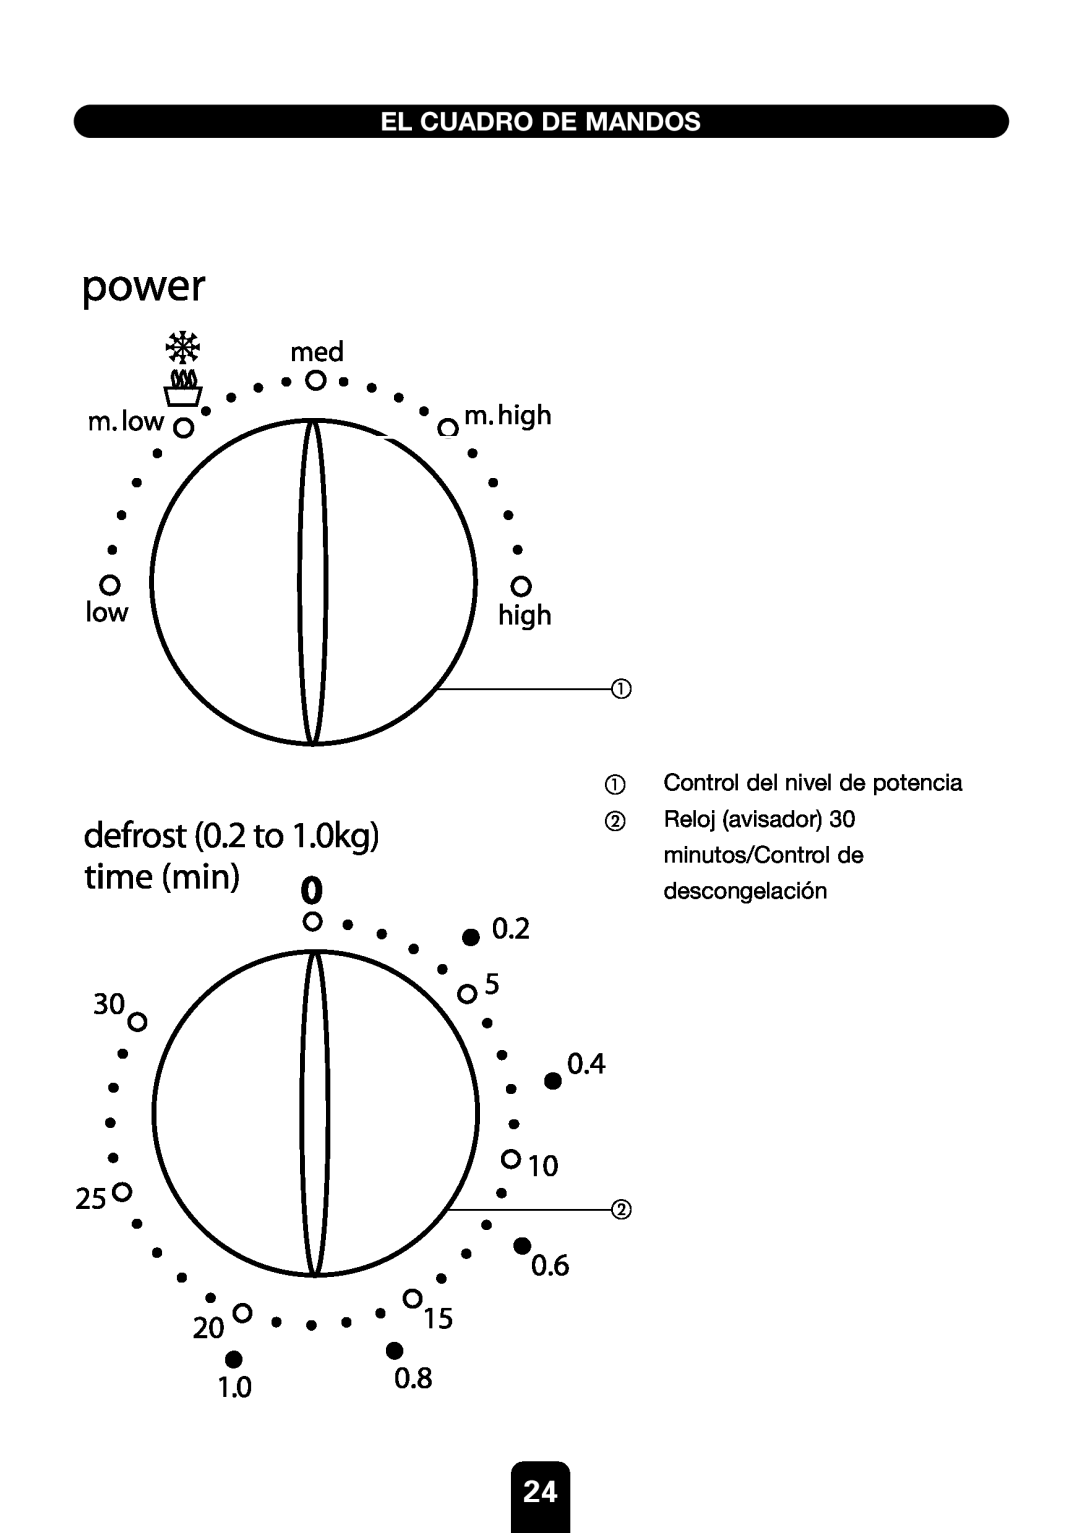 Kenwood MW430M El Cuadro De Mandos, defrost 0.2 to 1.0kg, Control del nivel de potencia Reloj avisador minutos/Control de 